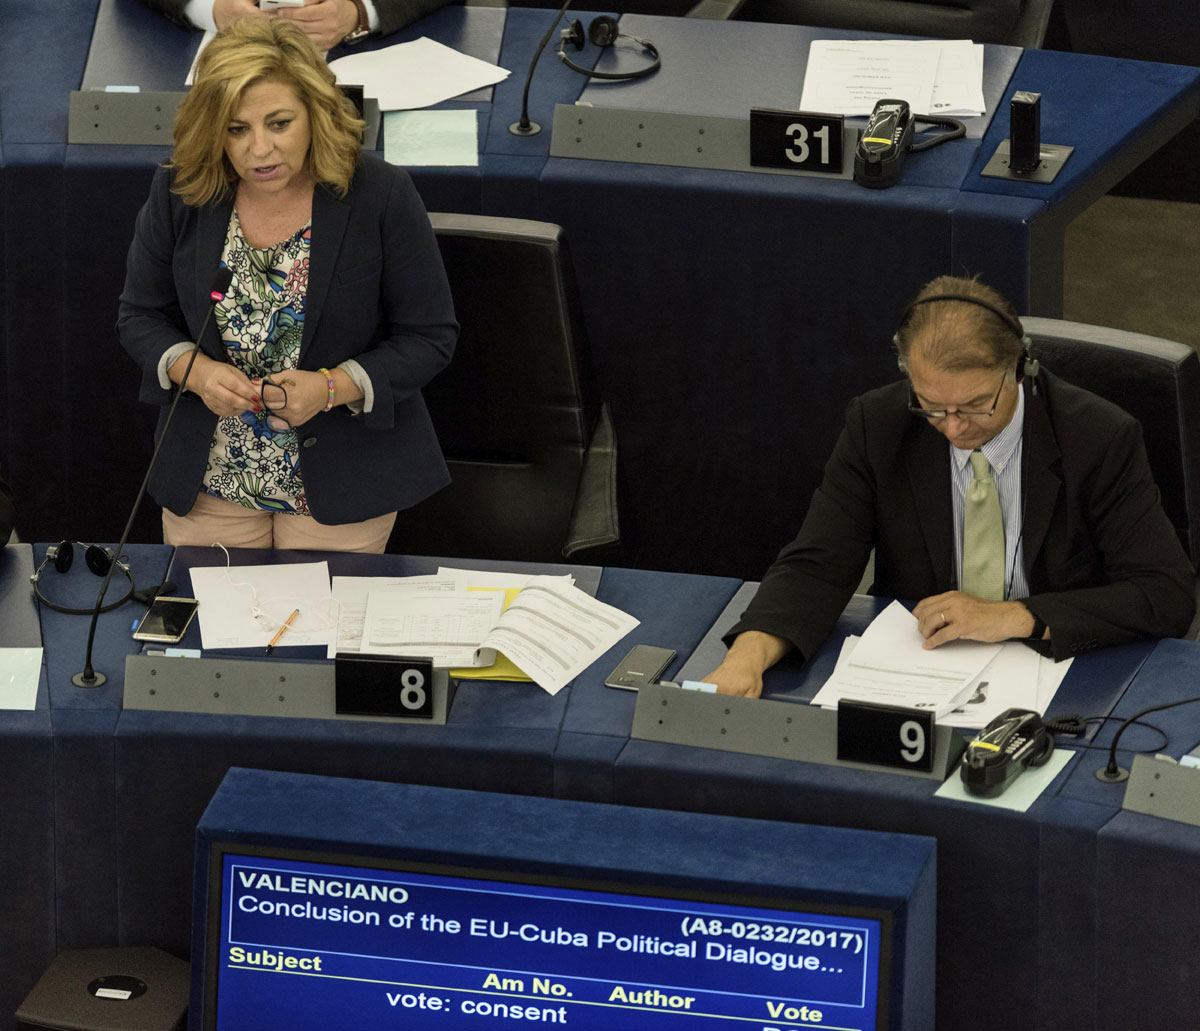 La eurodiputada española del PSOE Elena Valenciano (izq) interviene durante un debate en el Parlamento Europeo en Estrasburgo (Francia).